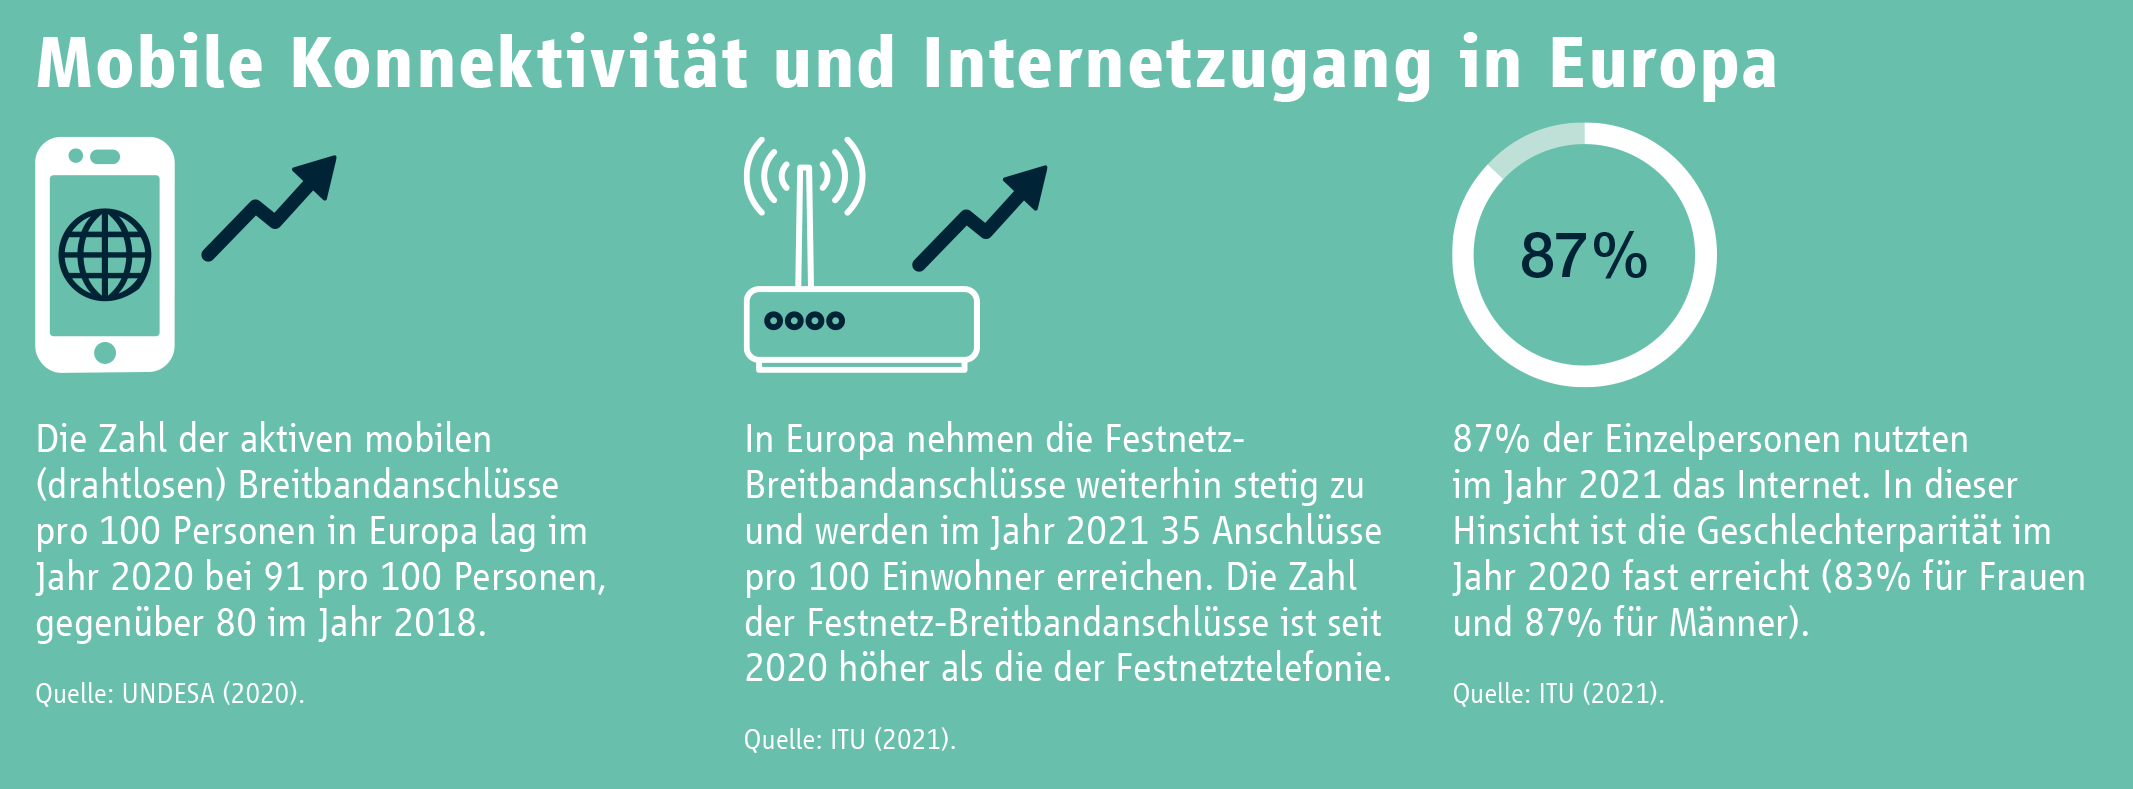 Mobile Konnektivität und Internetzugang in Europa